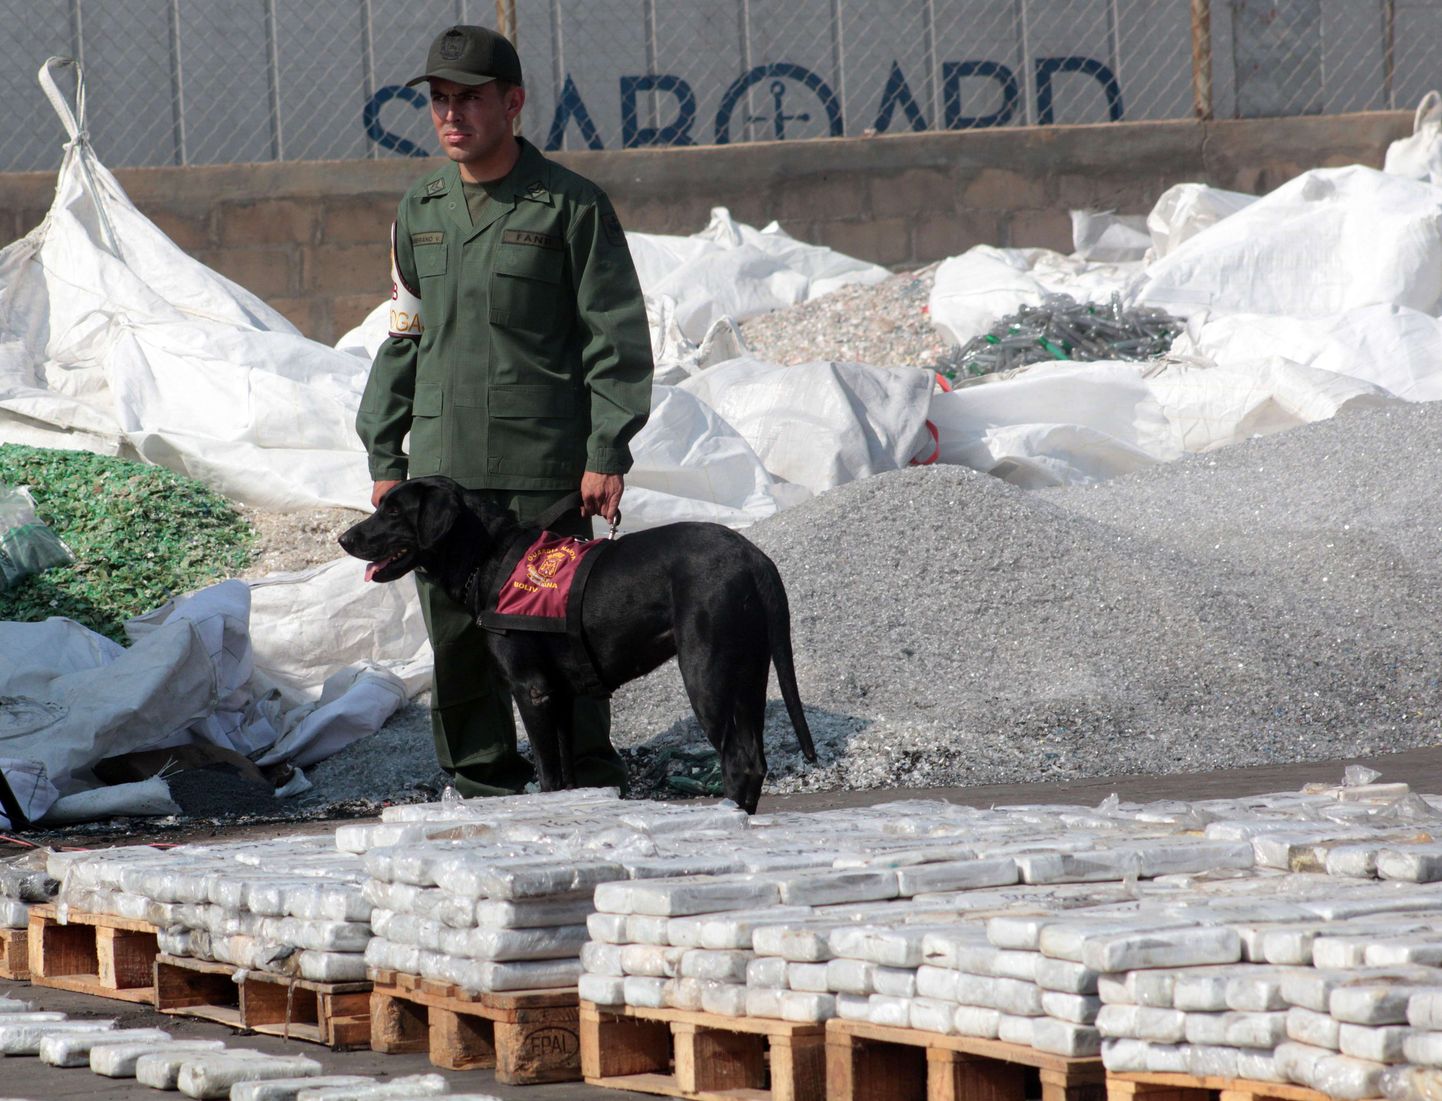 Venezuela rahvuskaartlane valvamas 2,6 tonni kokaiini, mis konfiskeeriti riigi loodeosas Maracaibos. Pilt pärineb aastast 2013.